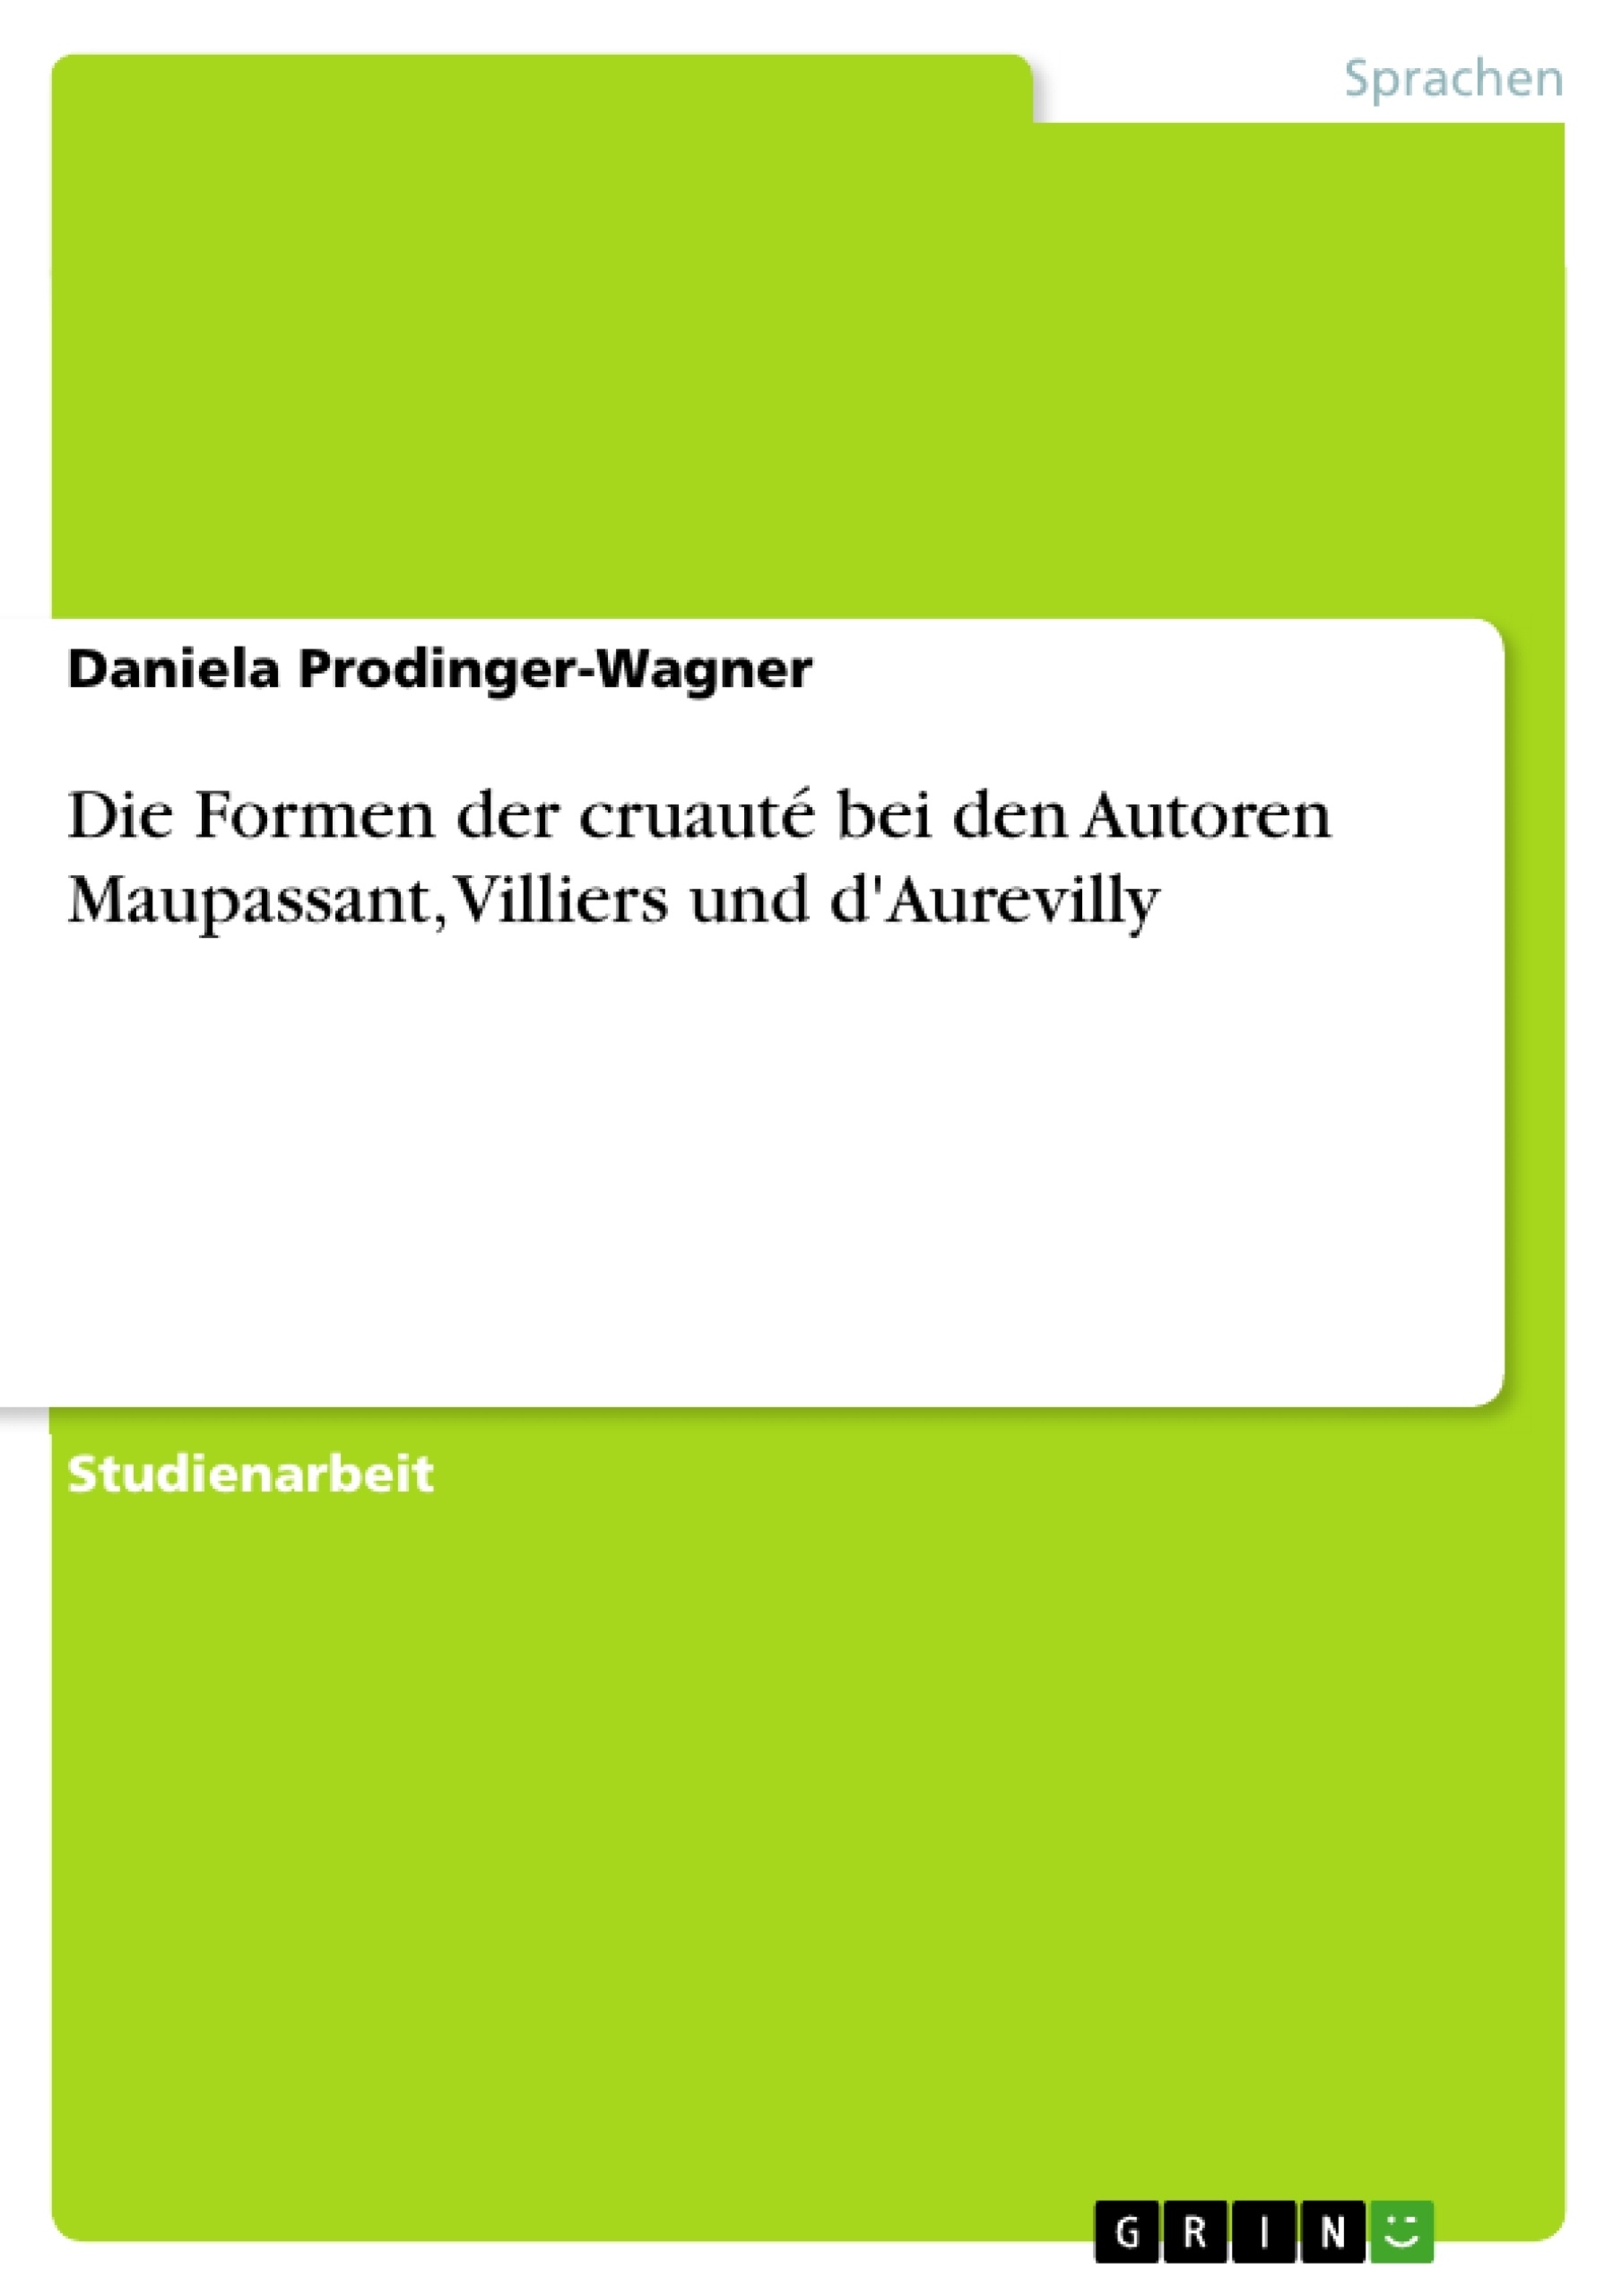 Title: Die Formen der cruauté bei den Autoren Maupassant, Villiers und d'Aurevilly